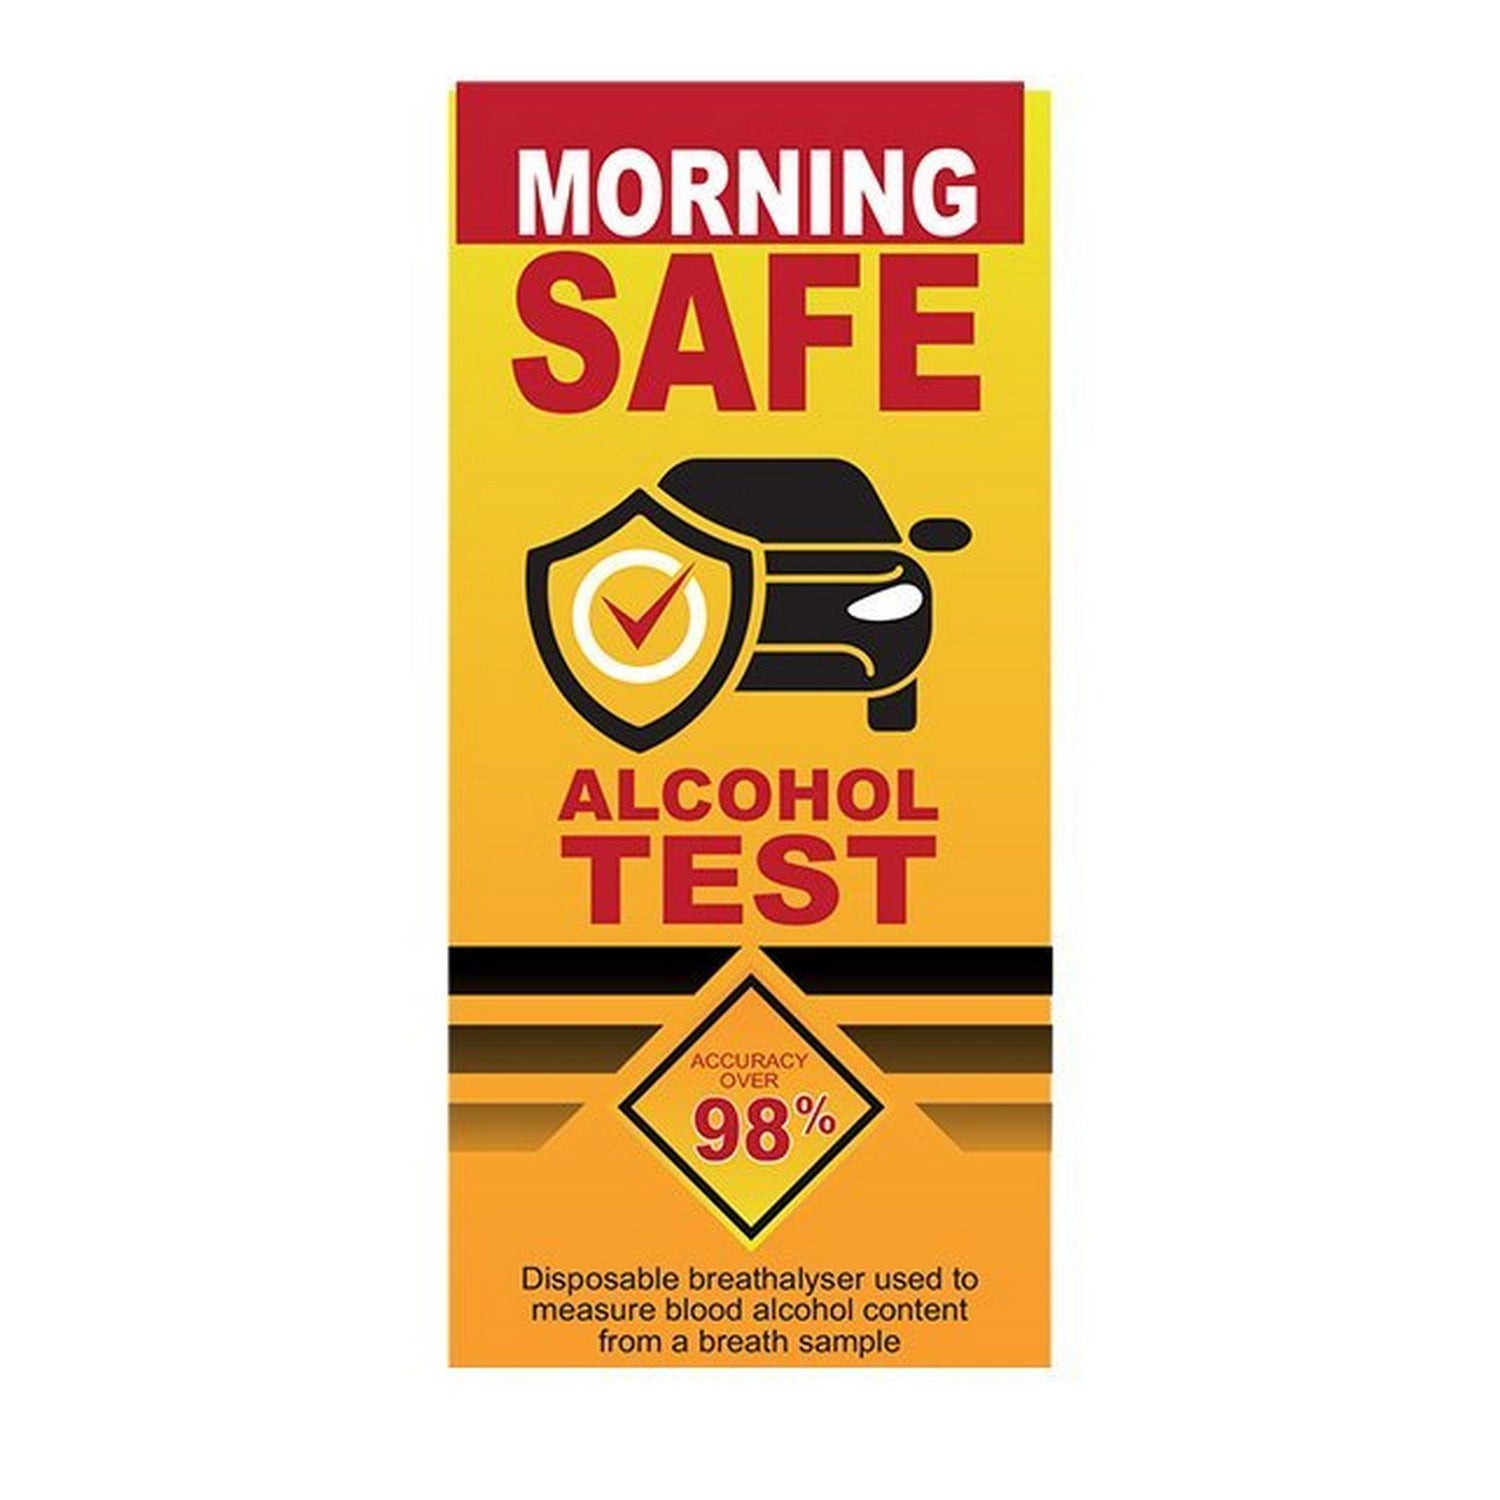 MORNING SAFE ALCOHOL TEST 2 PACK